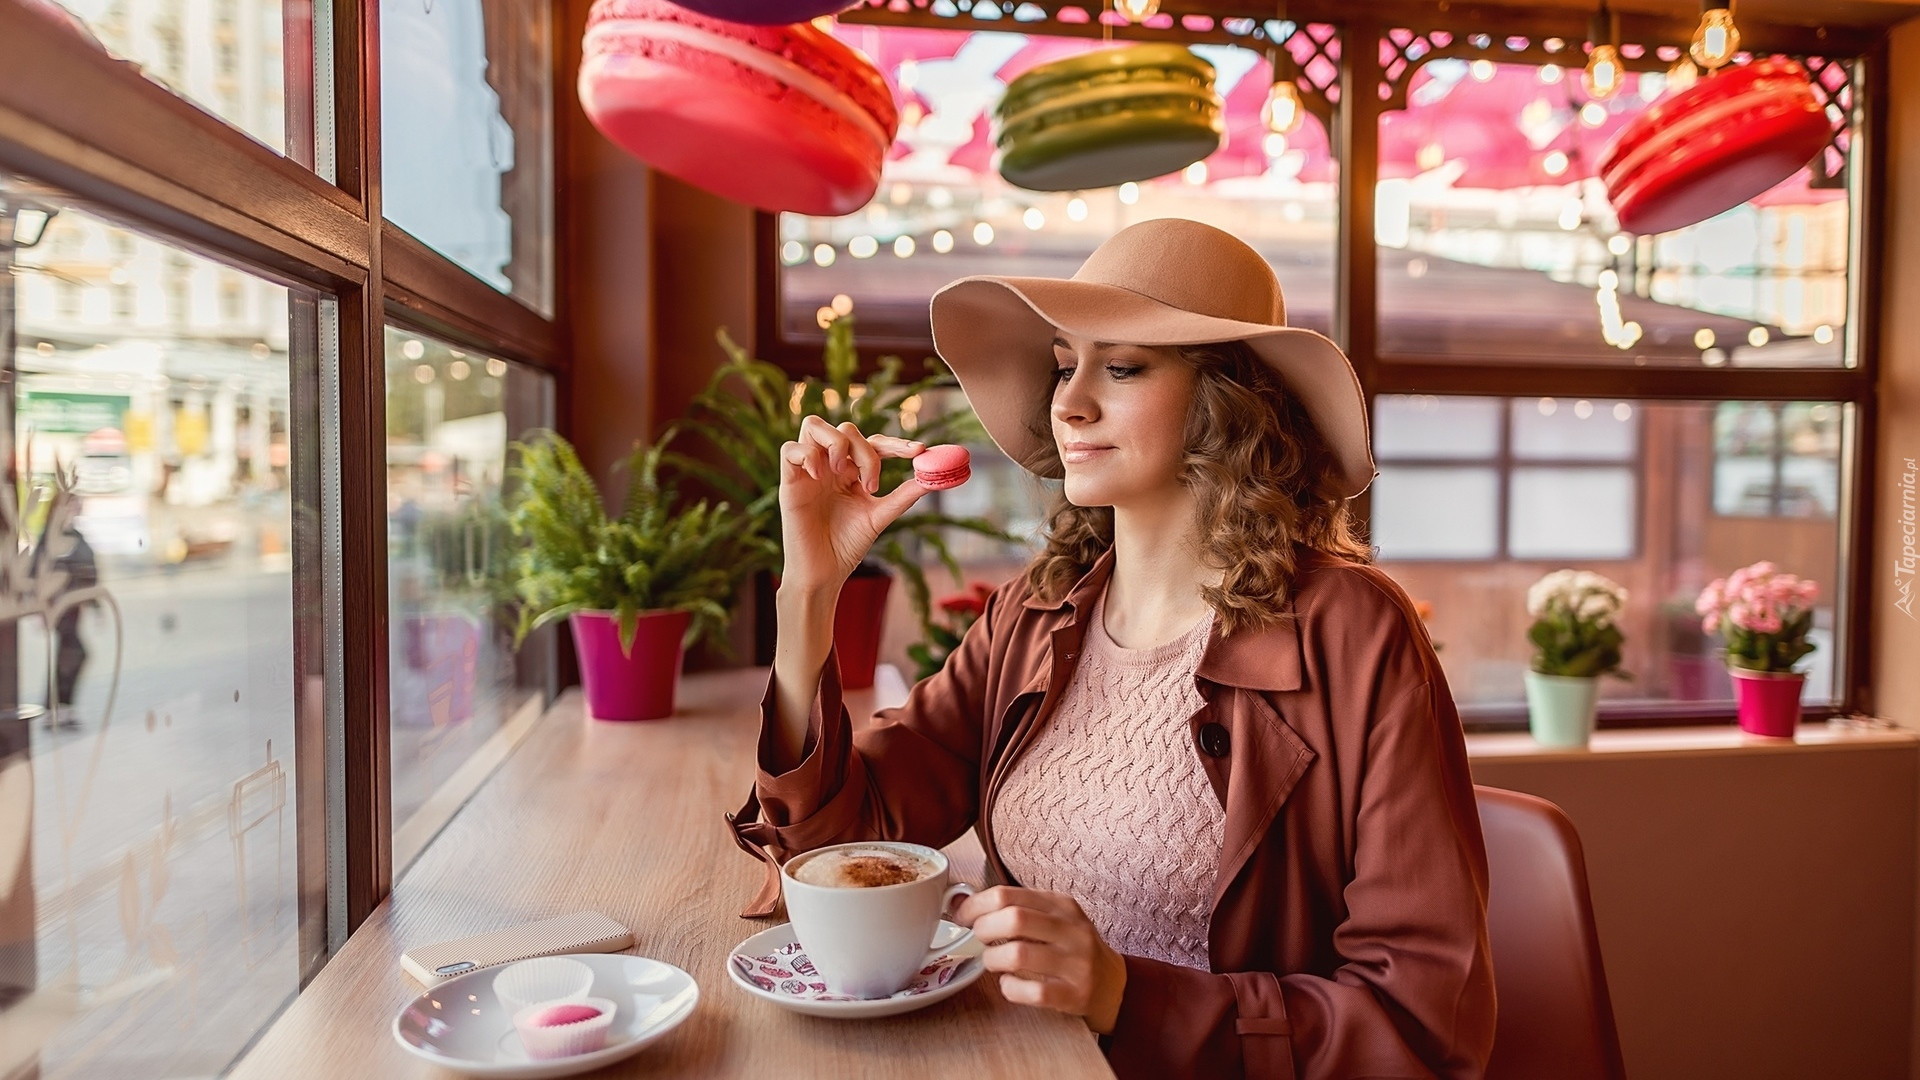 tapeta-kobieta-w-kapeluszu-przy-kawiarnianym-stoliku.jpg